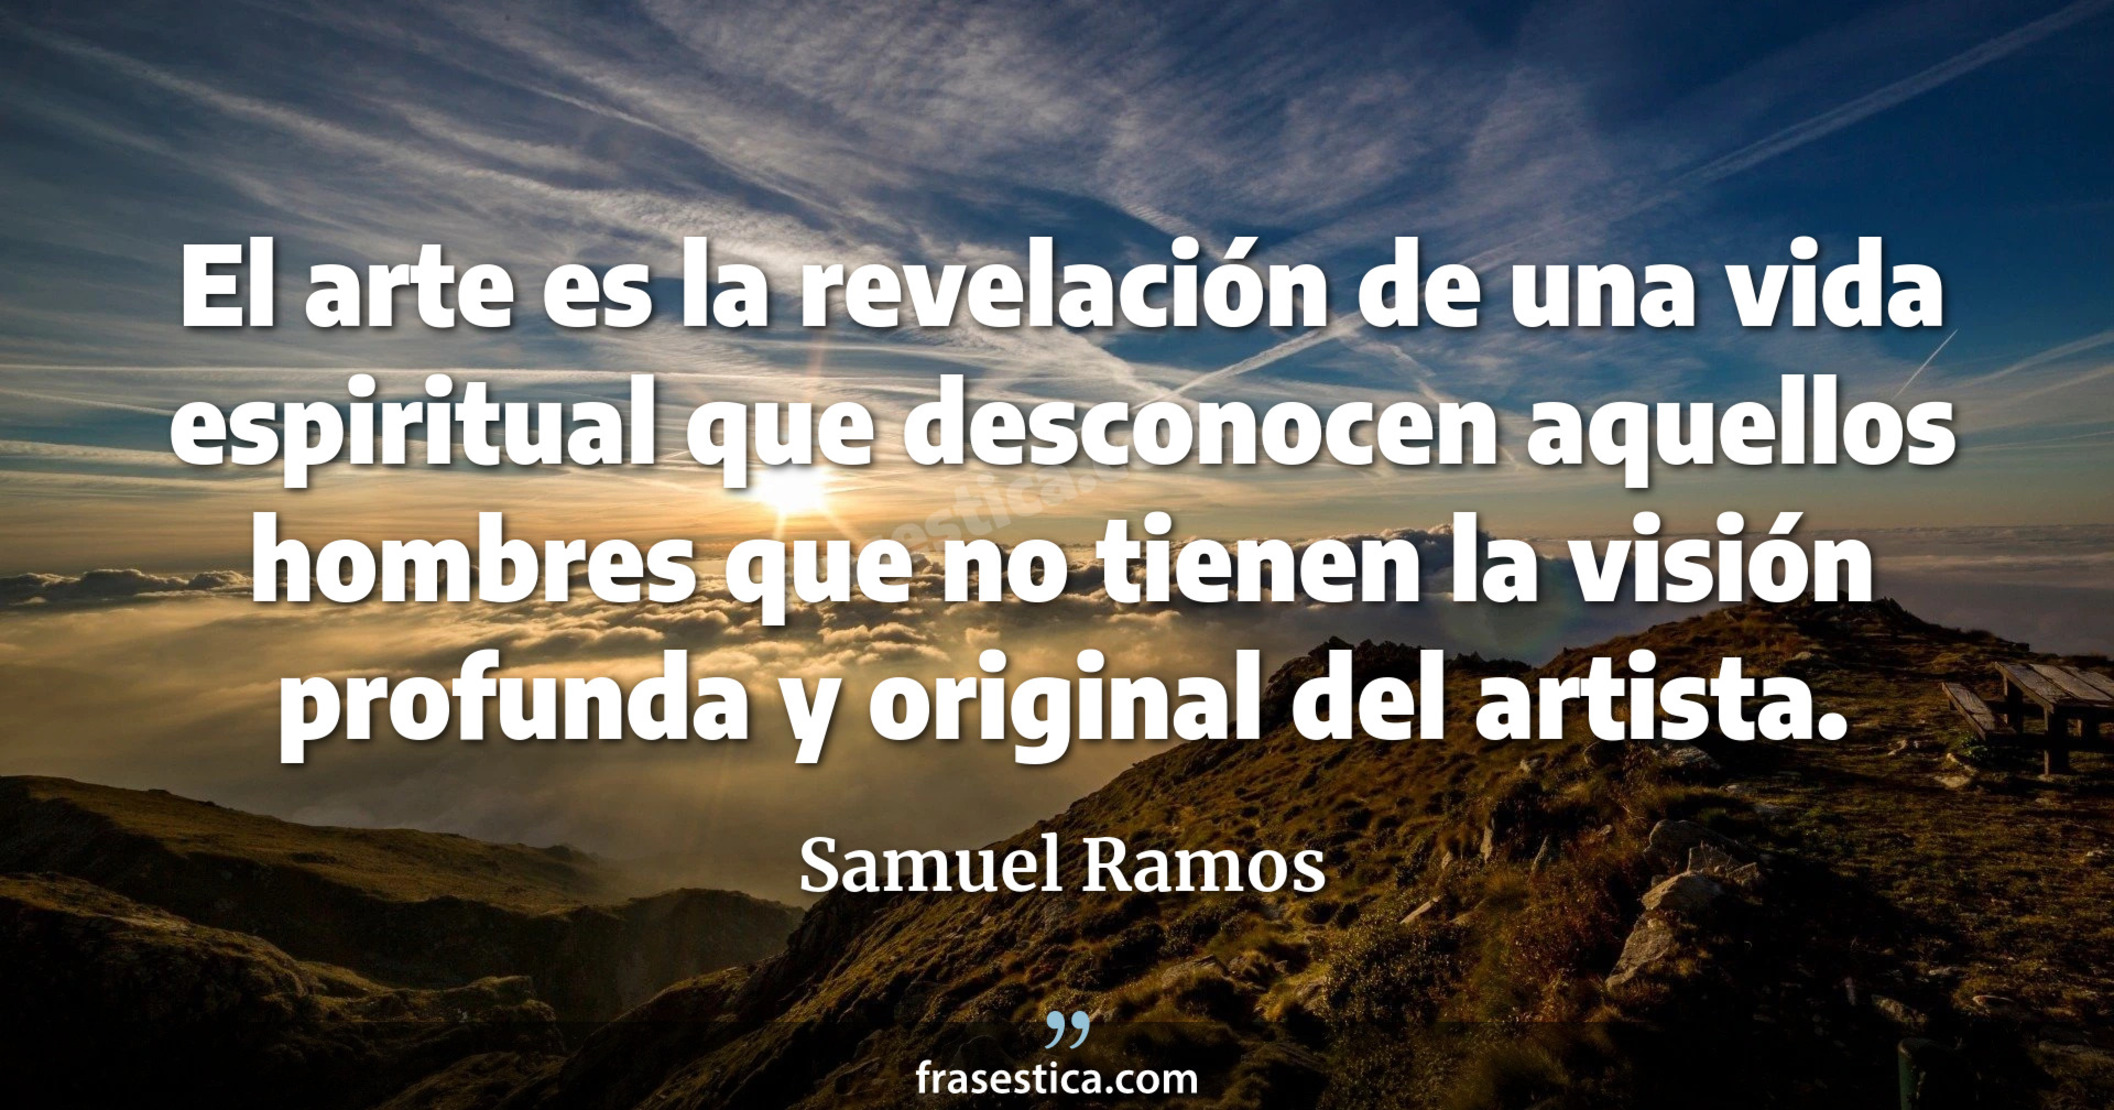 El arte es la revelación de una vida espiritual que desconocen aquellos hombres que no tienen la visión profunda y original del artista. - Samuel Ramos